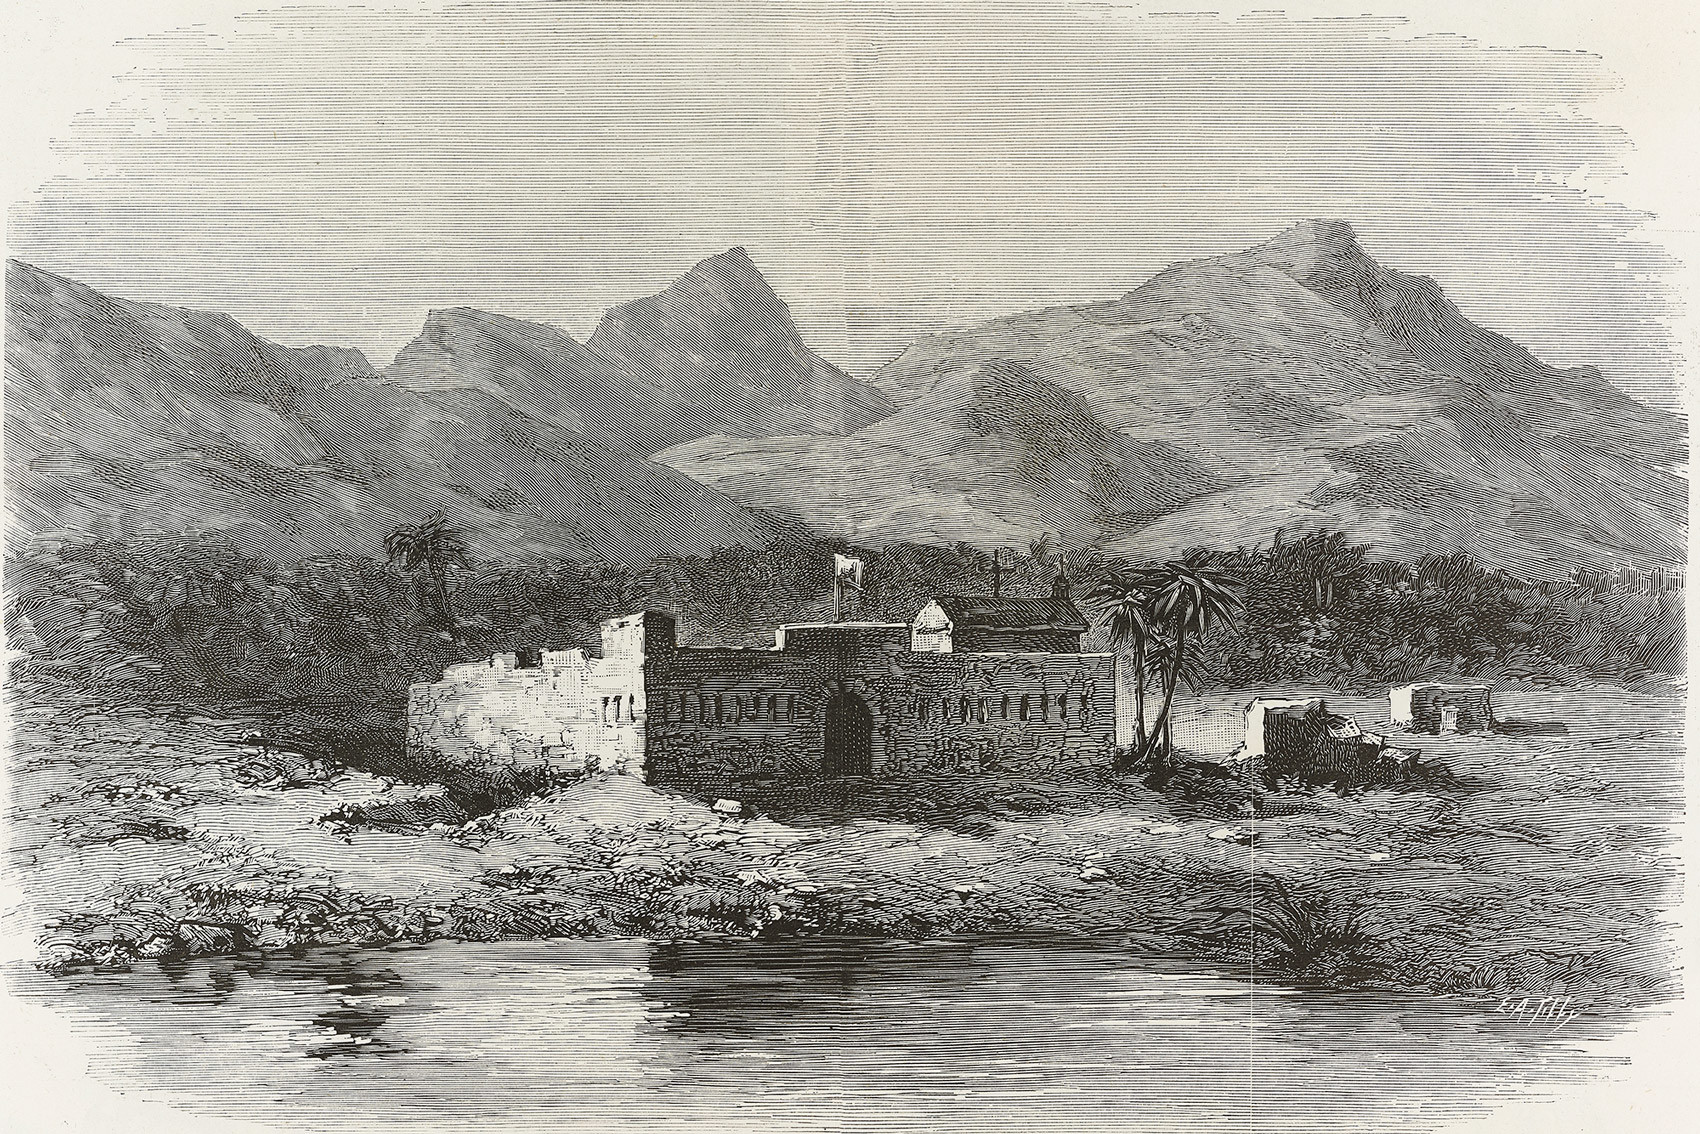 Russian fort in Sagallo, Djibouti